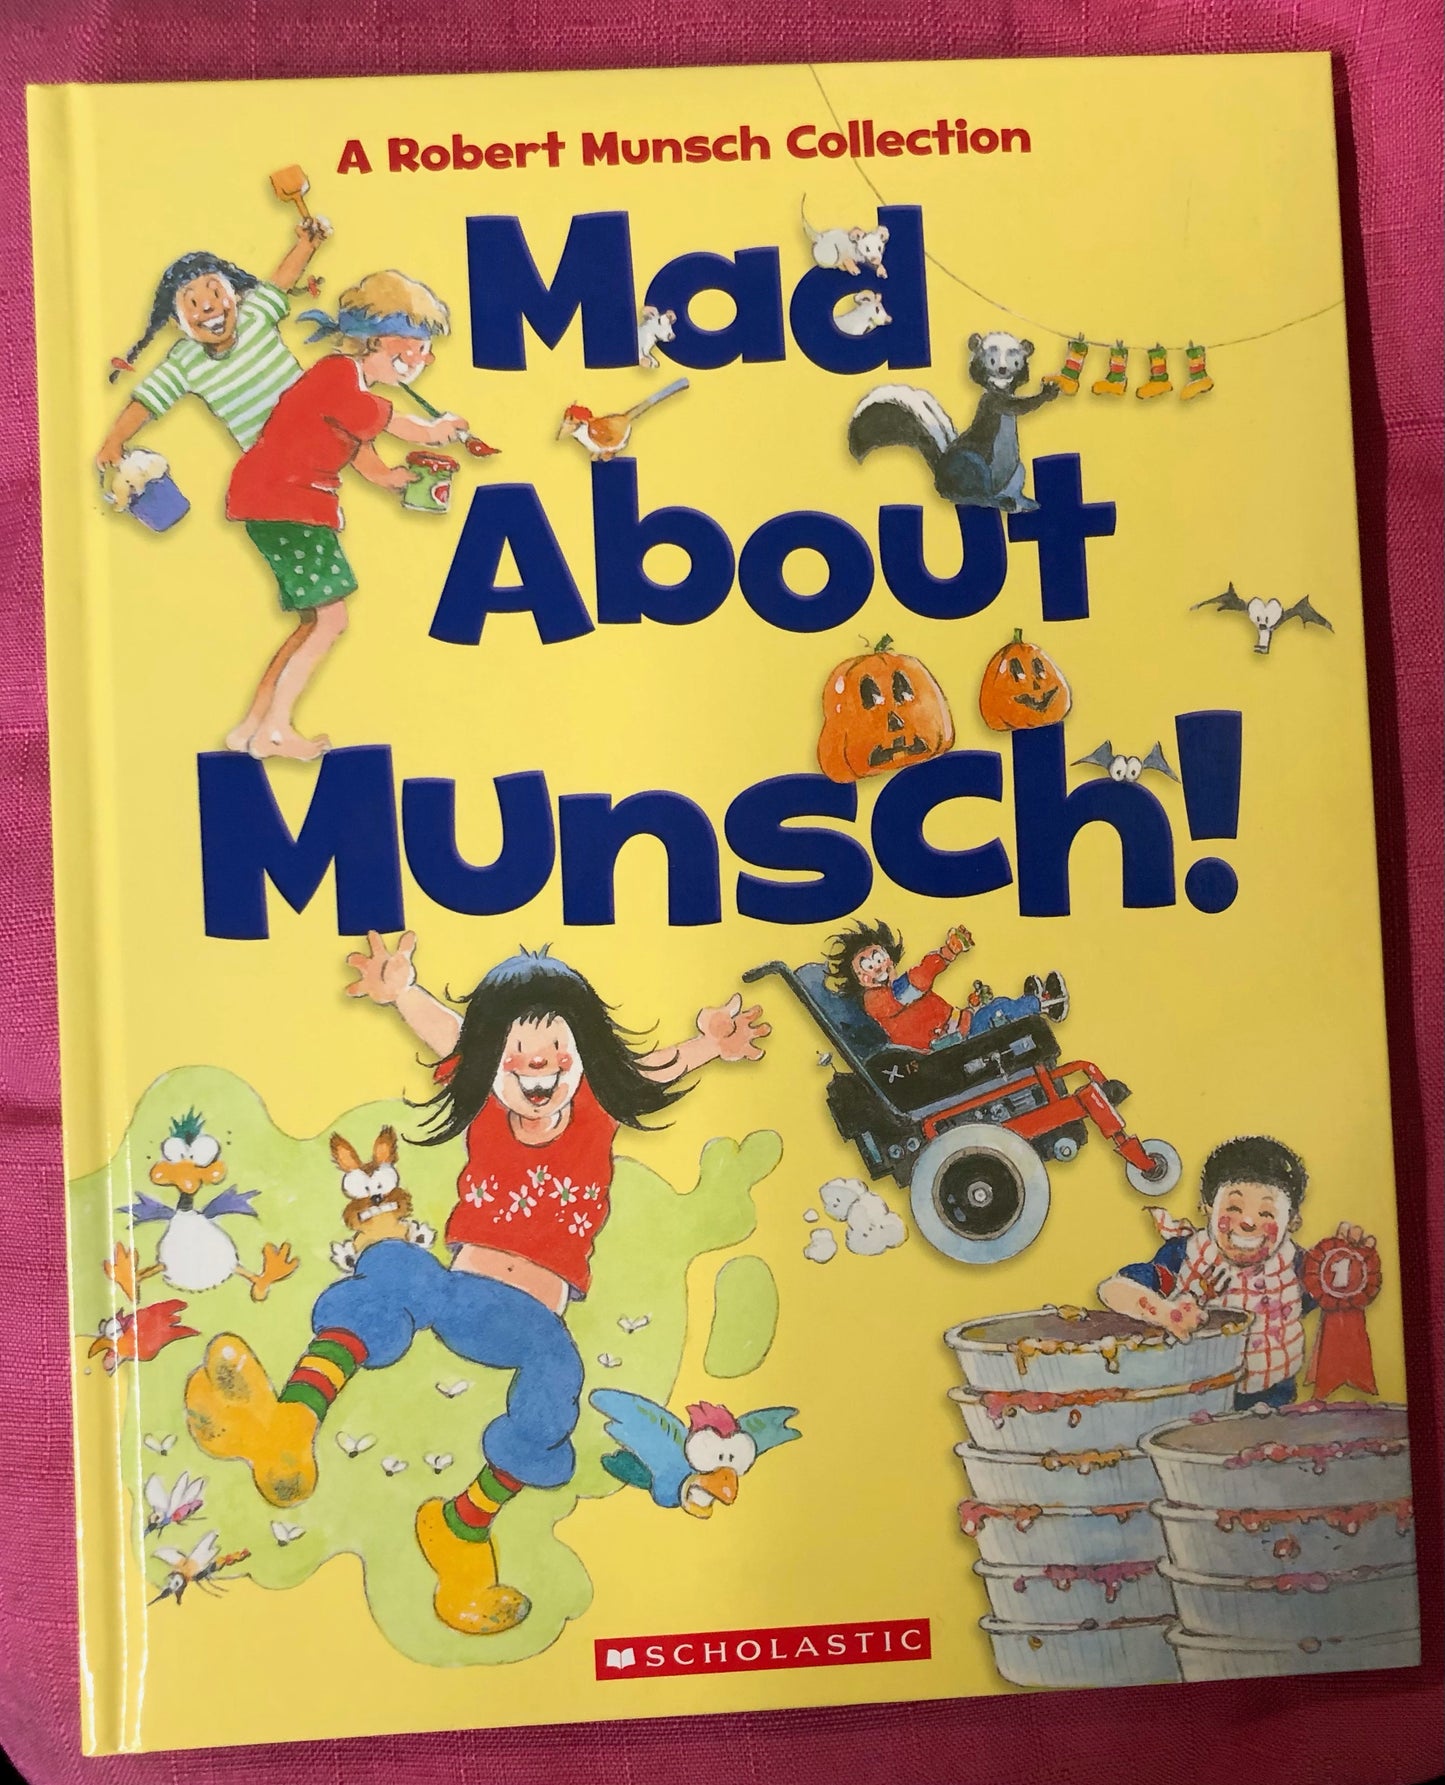 Mad About Munsch!